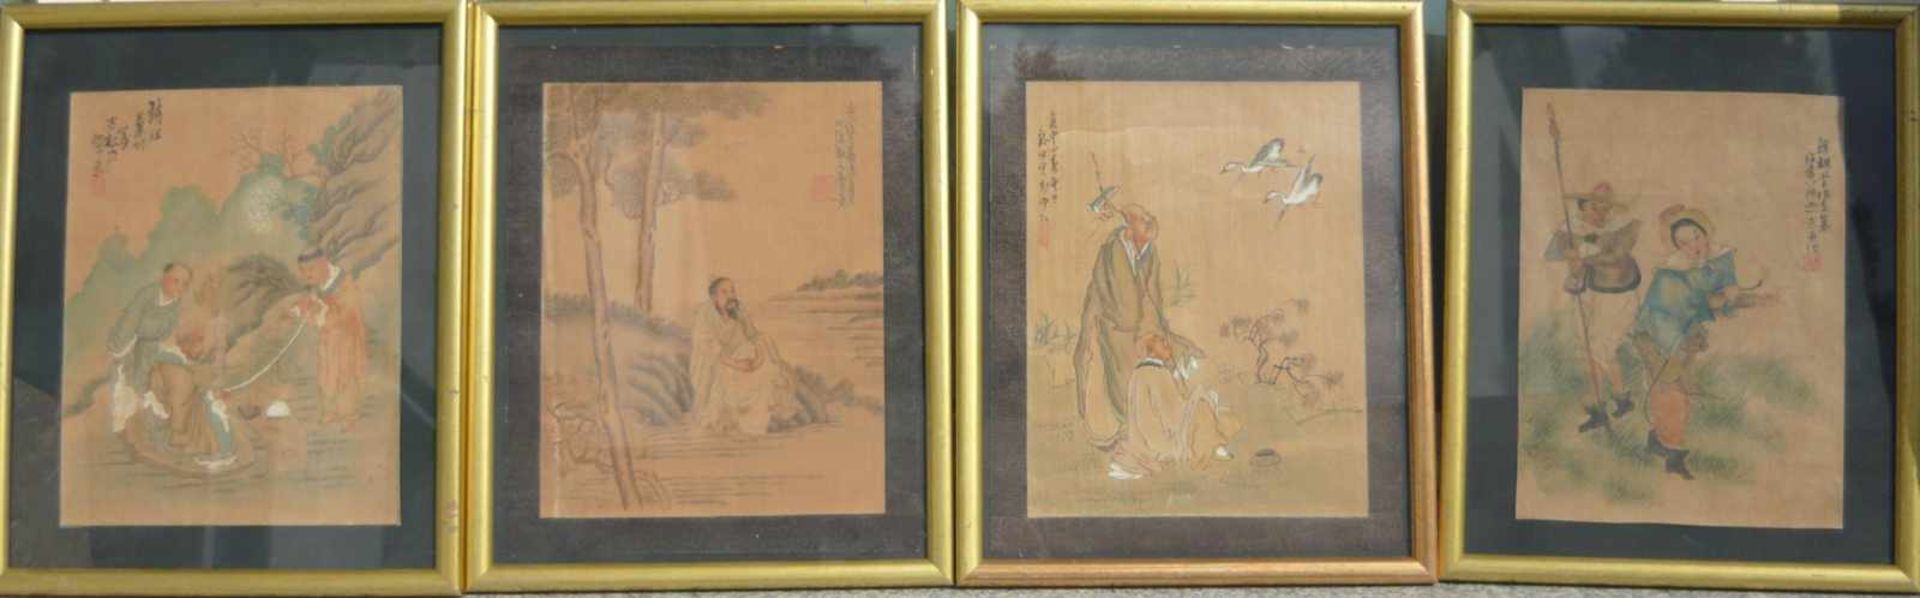 Folge von vier chinesischen handgemalten Bildern. Hinter Glas gerahmt. Wohl antik. Rahmen je ca.